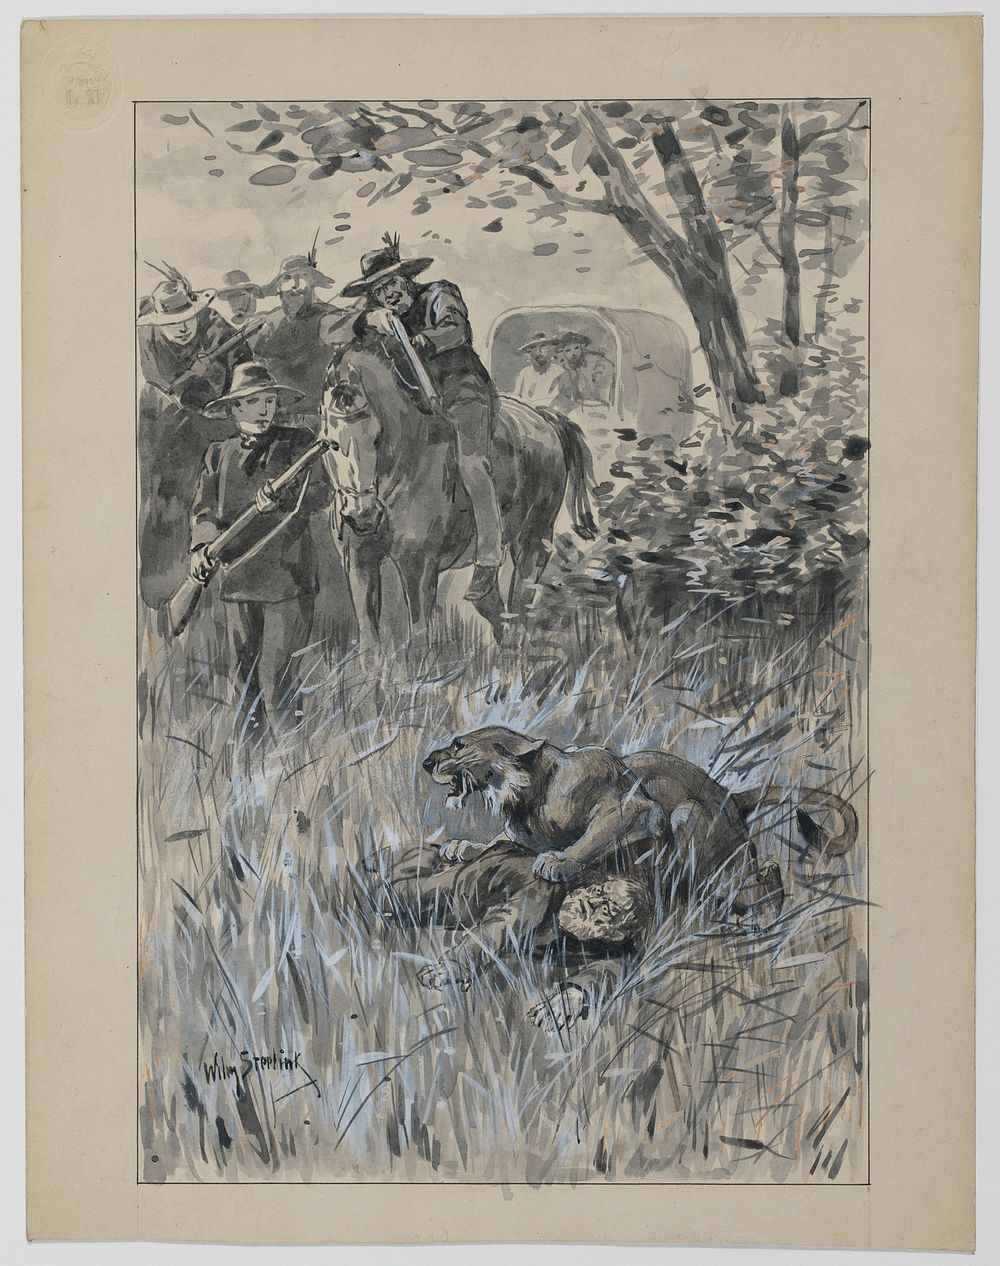 Opgejaagde leeuw valt een man aan (1836 - 1913) by Willem Steelink I